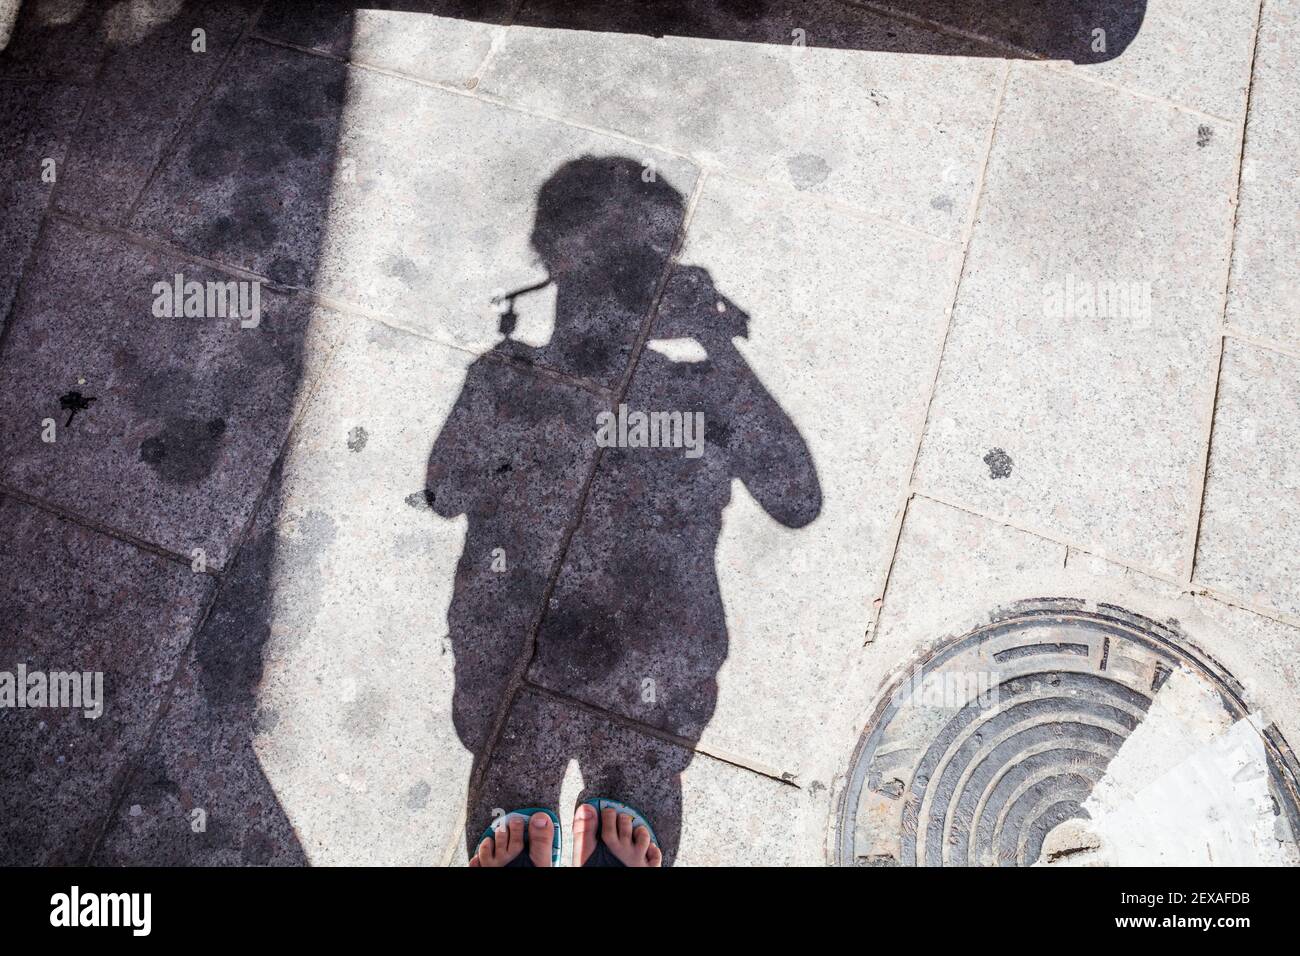 Ein Kind, das ein Bild ihres Schattens auf dem nimmt Boden Stockfoto